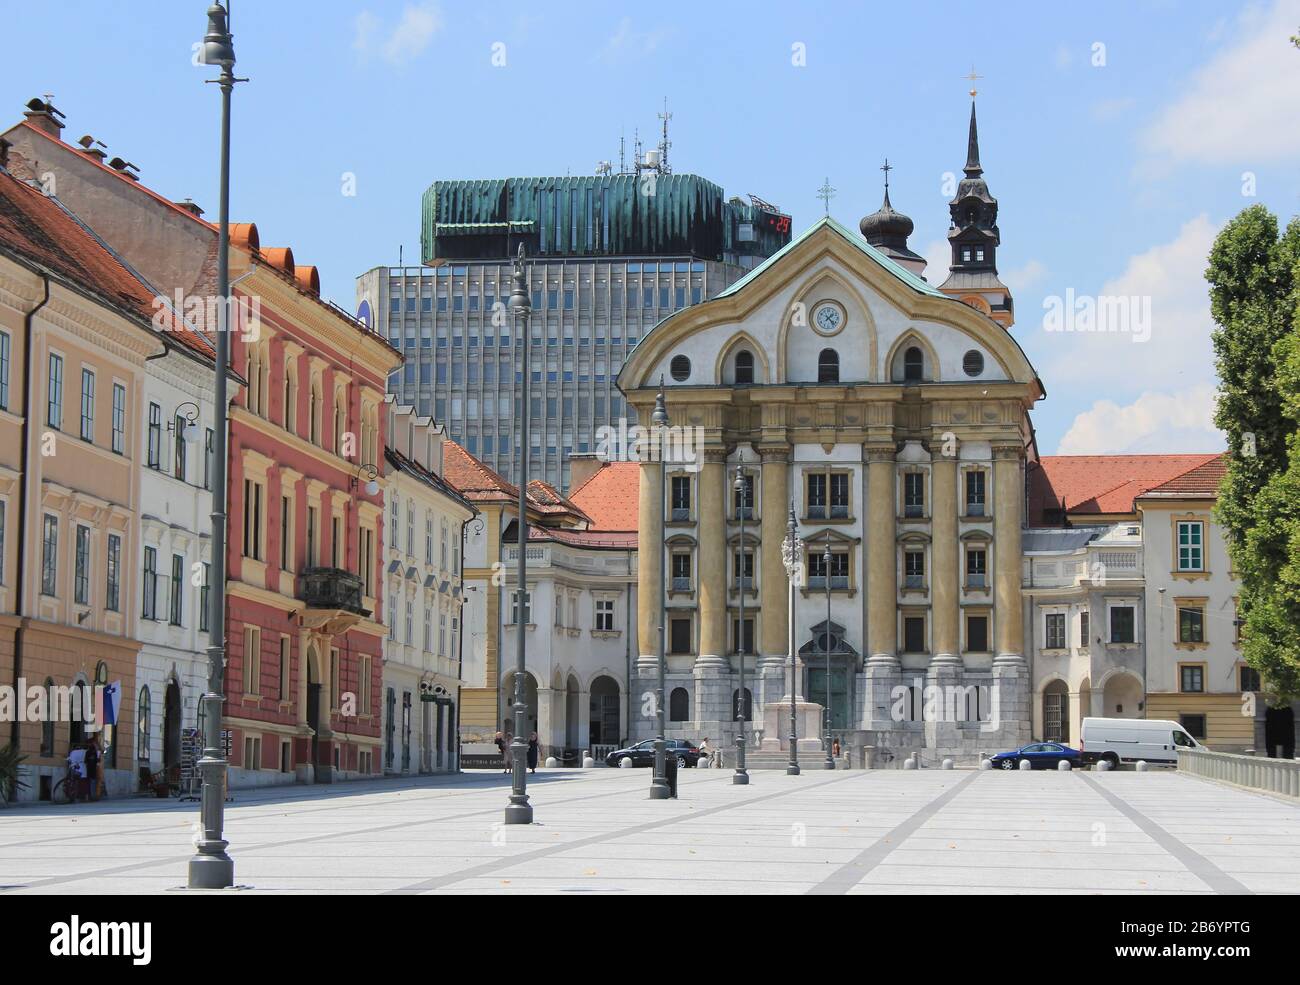 Congress square promenade with Ursuline church, Ljubljana, Slovenia Stock Photo